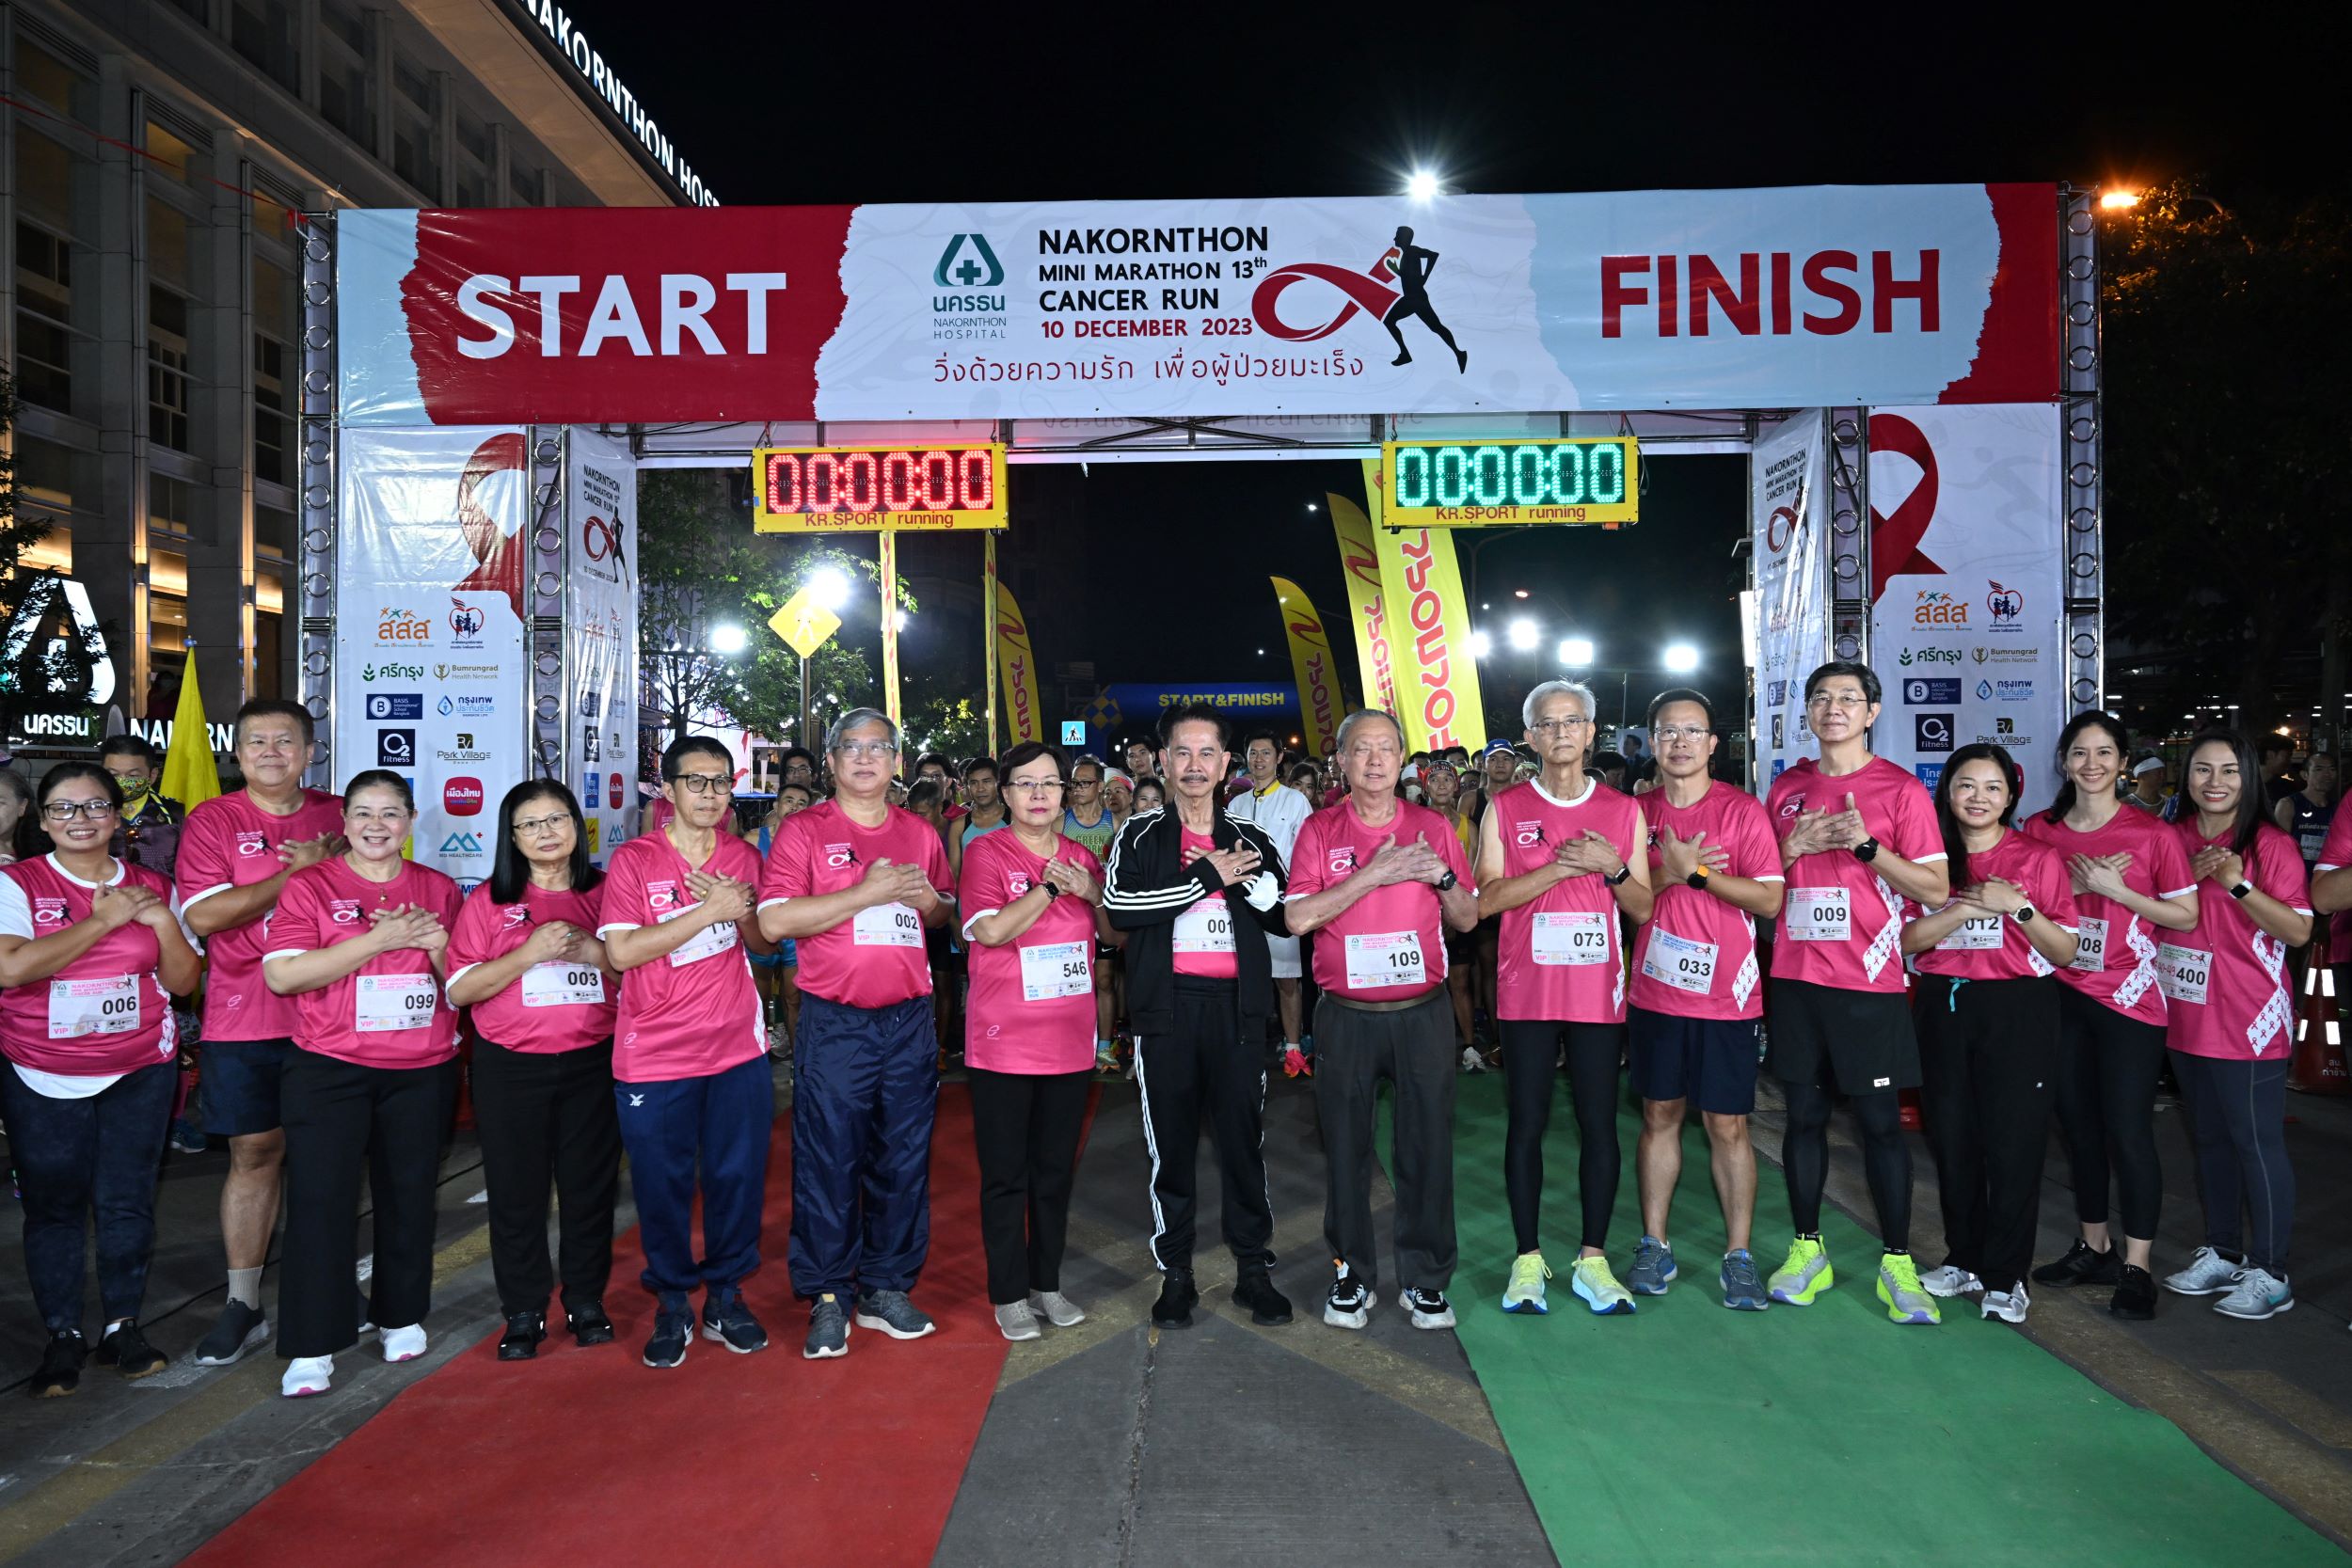 งานเดิน-วิ่งมหากุศล นครธนมินิมาราธอน ครั้งที่ 13 "วิ่งด้วยความรัก เพื่อผู้ป่วยมะเร็ง"